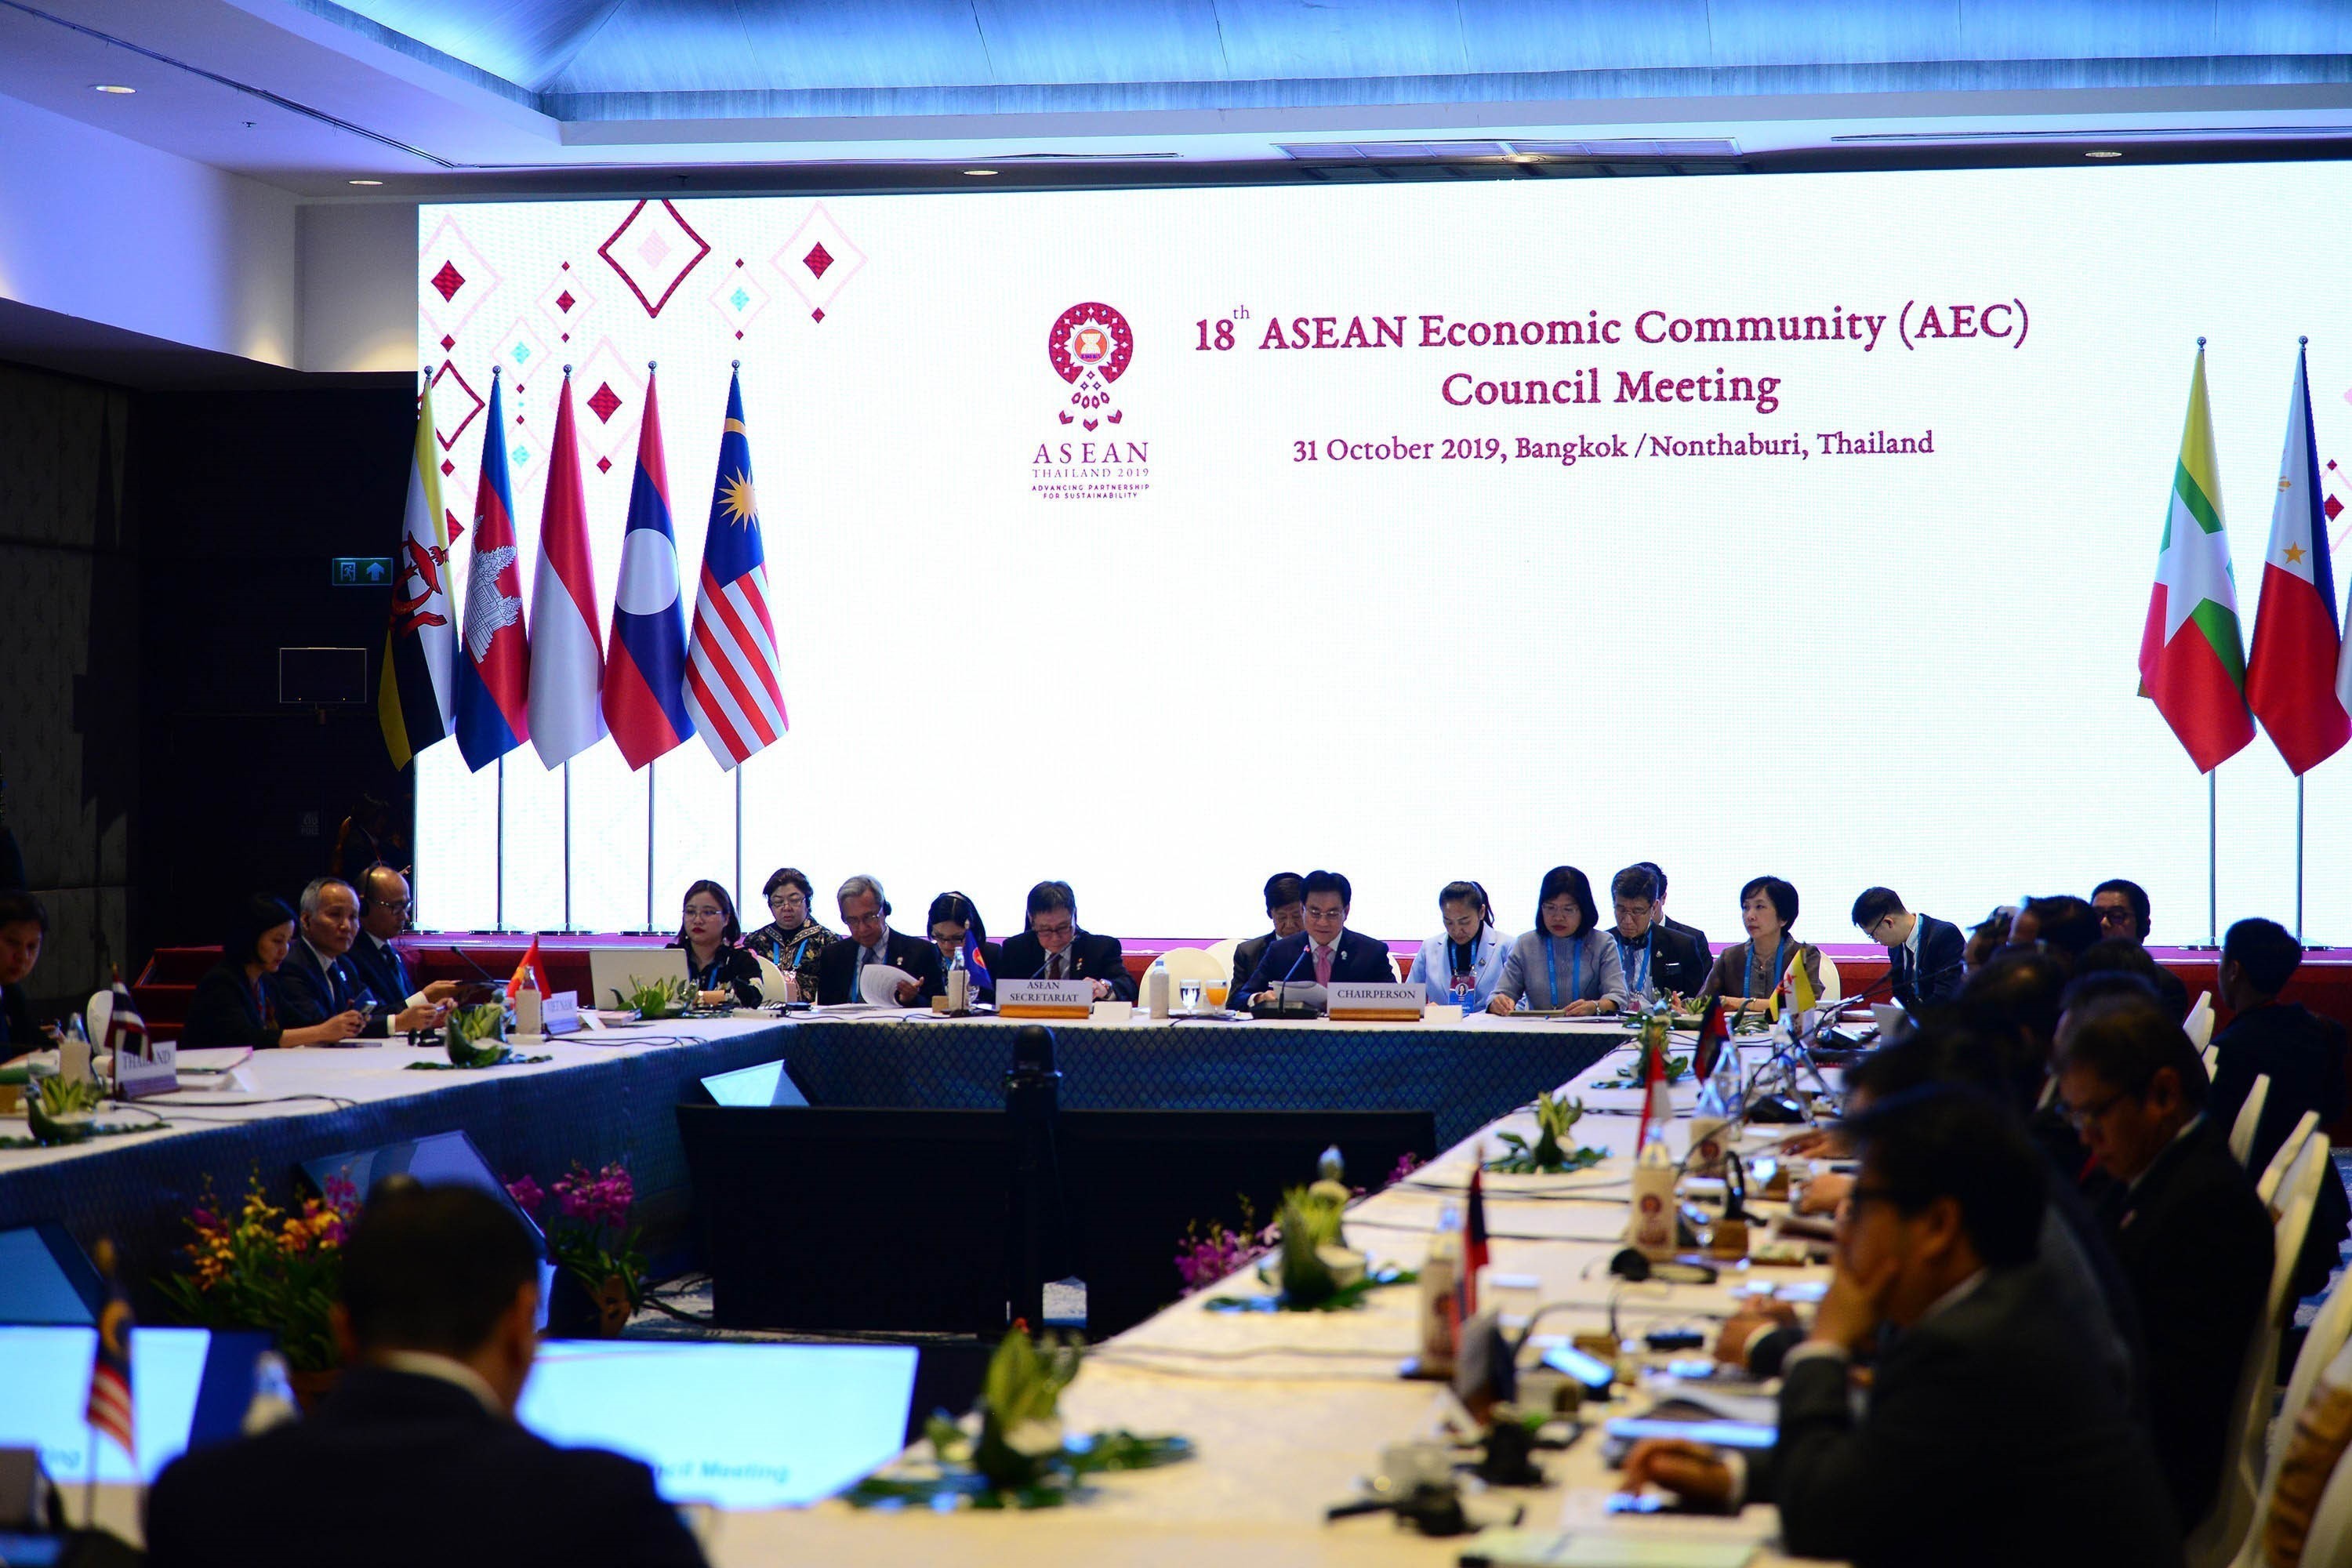  Hội nghị Hội đồng Cộng đồng kinh tế ASEAN lần thứ 18 diễn ra tại Thái Lan, ngày 31/10/2019. (Ảnh: Ngọc Quang/TTXVN)